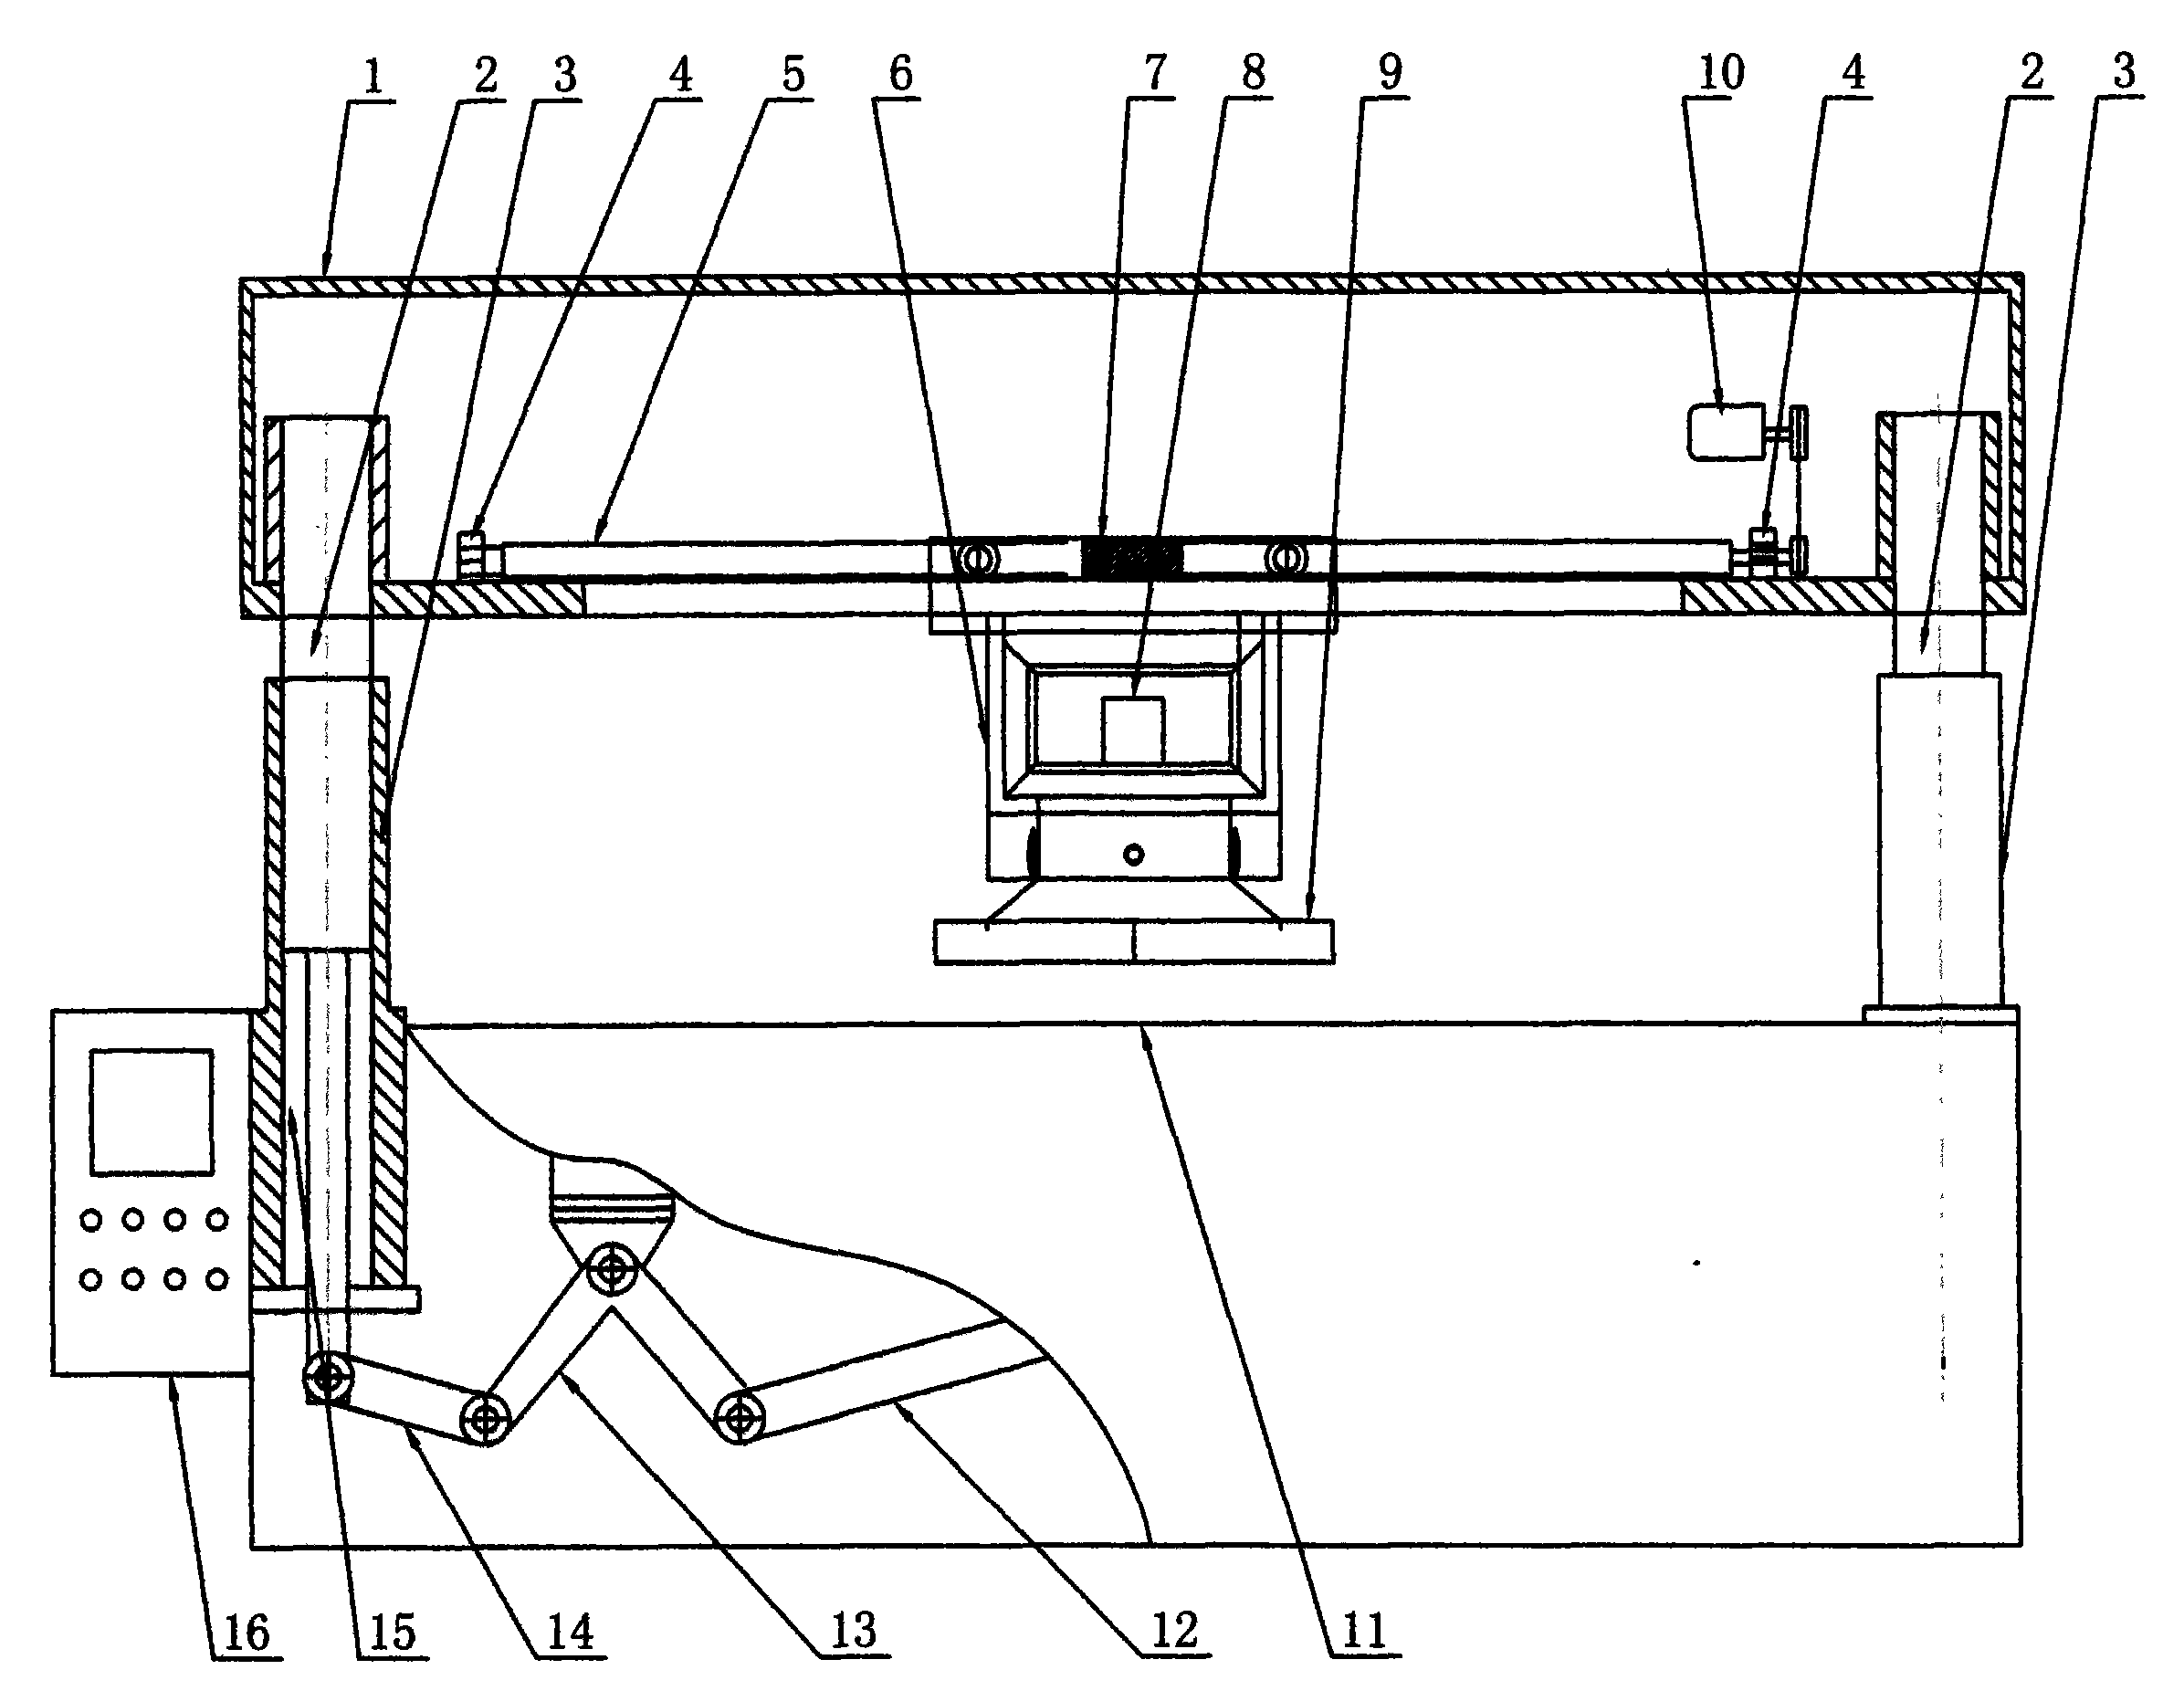 Numerical control cutting machine